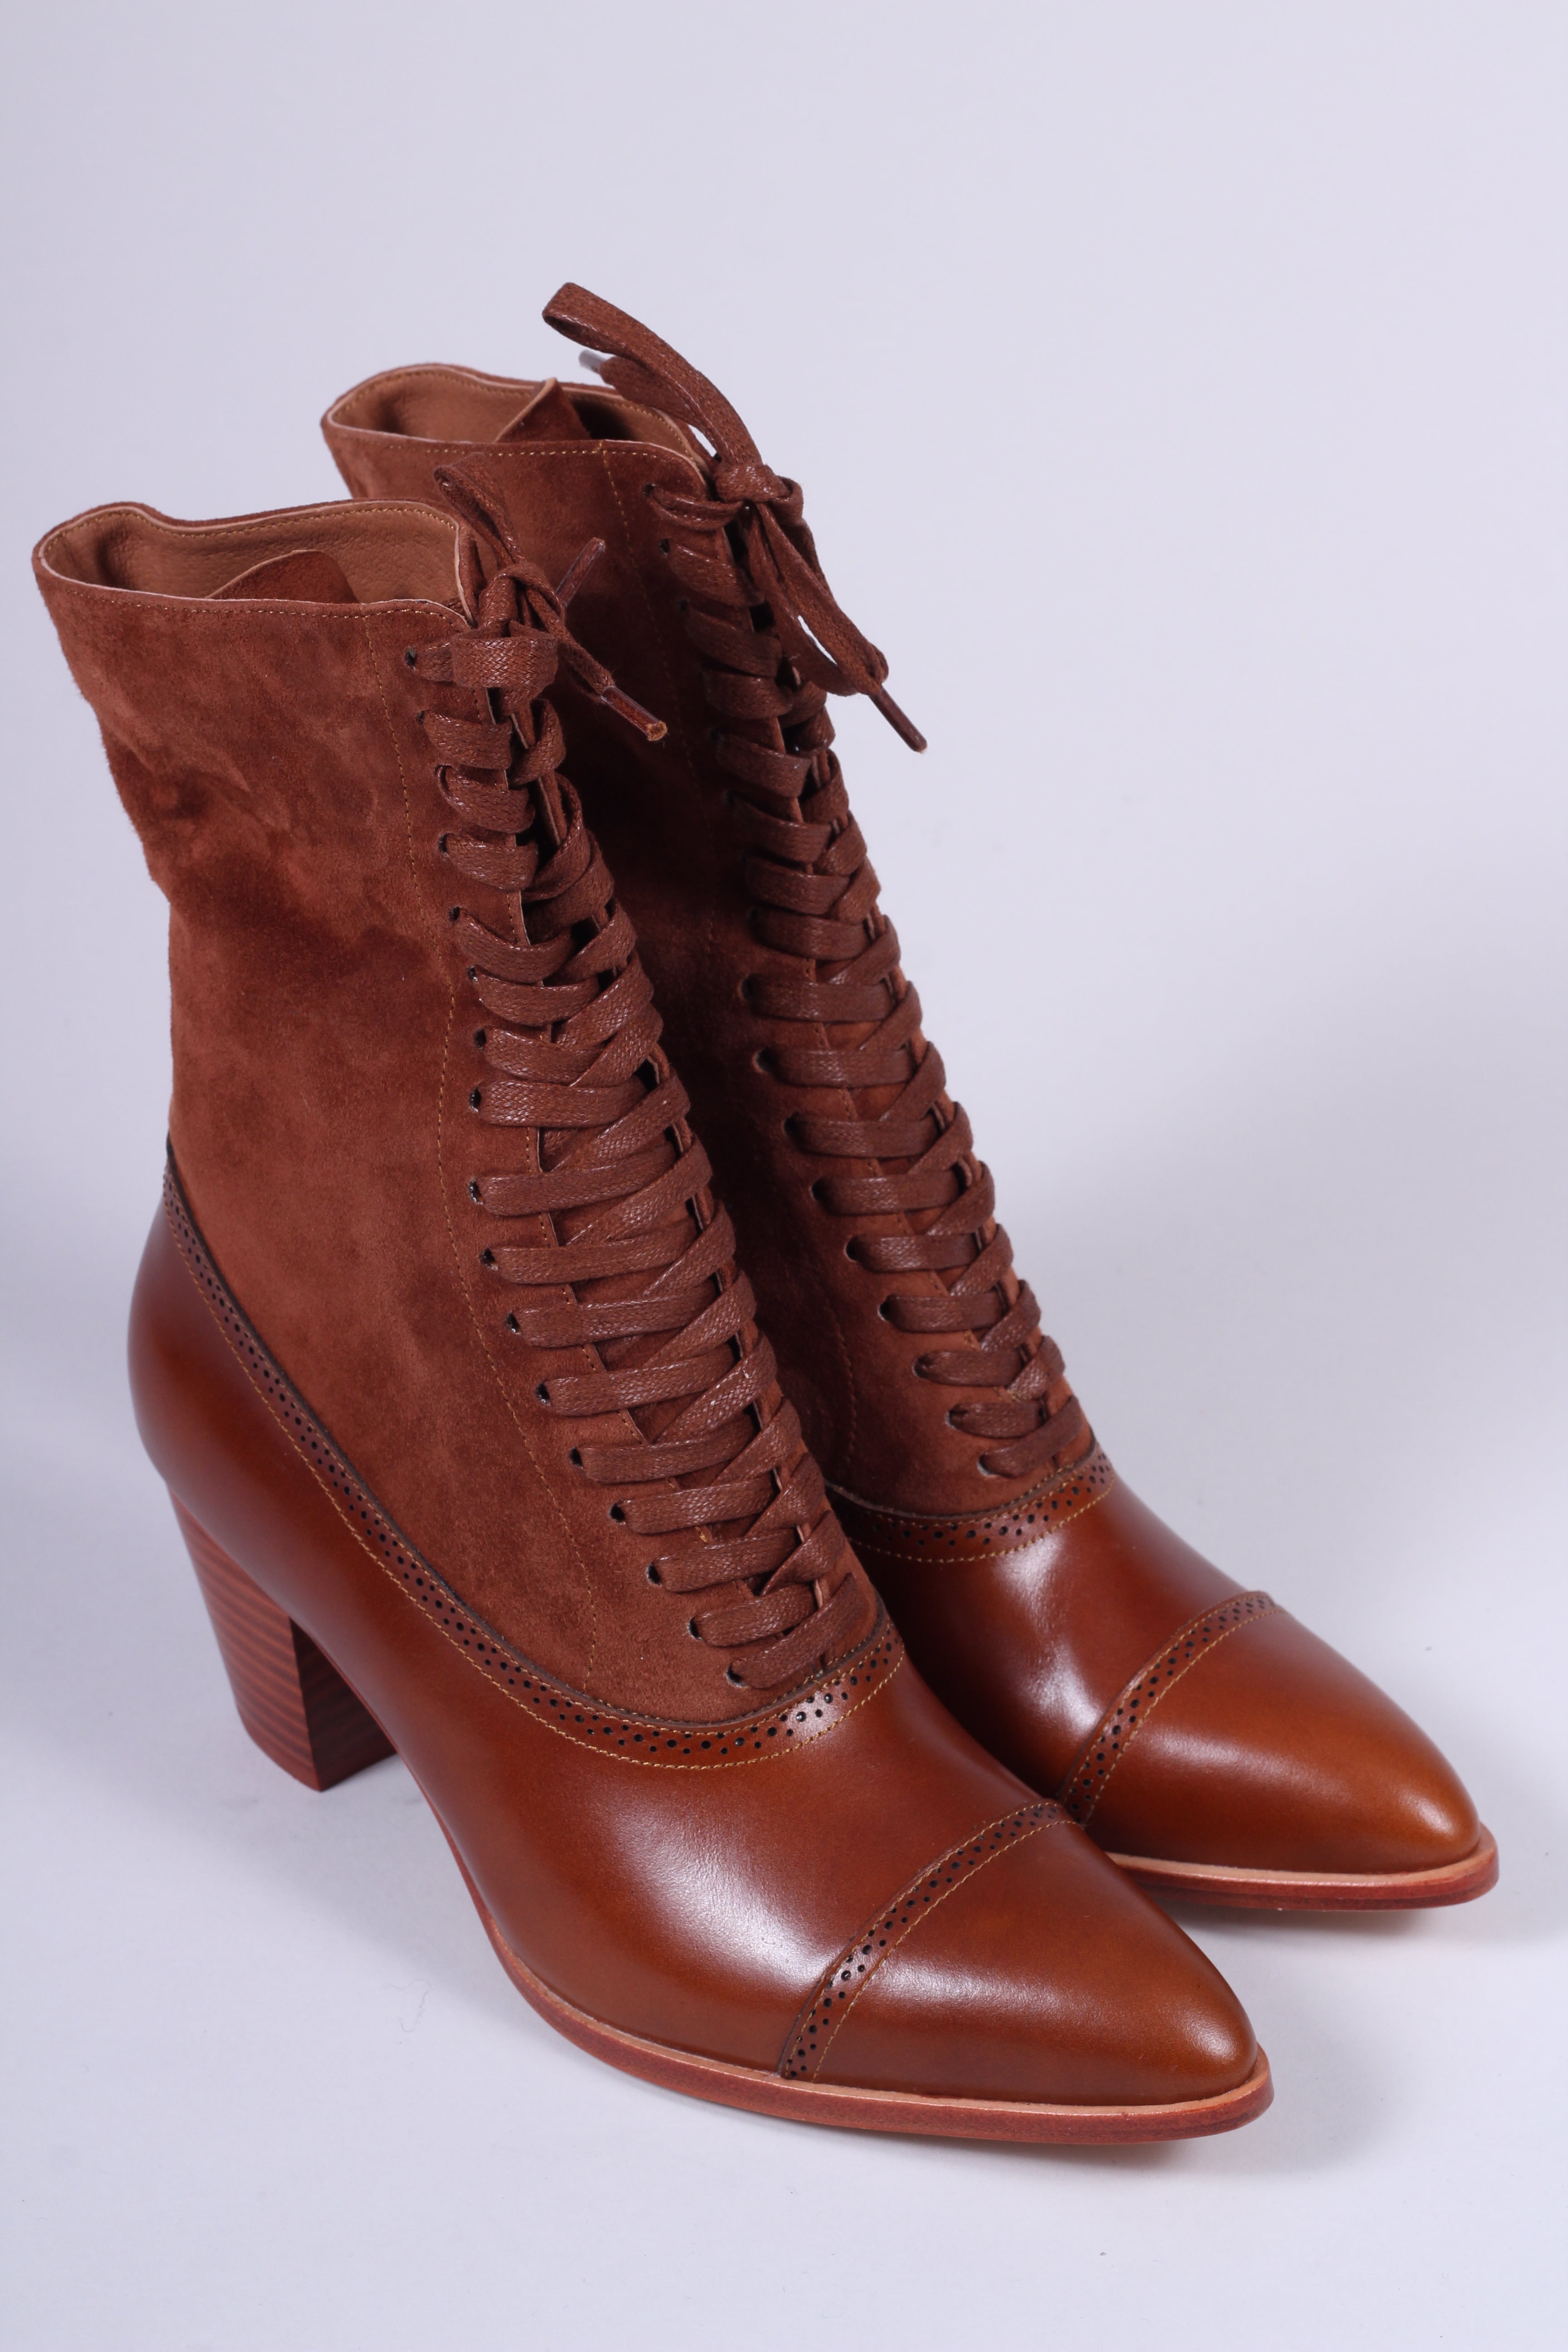 Edwardianske støvler 1900-1910 - cognac brun- Victoria